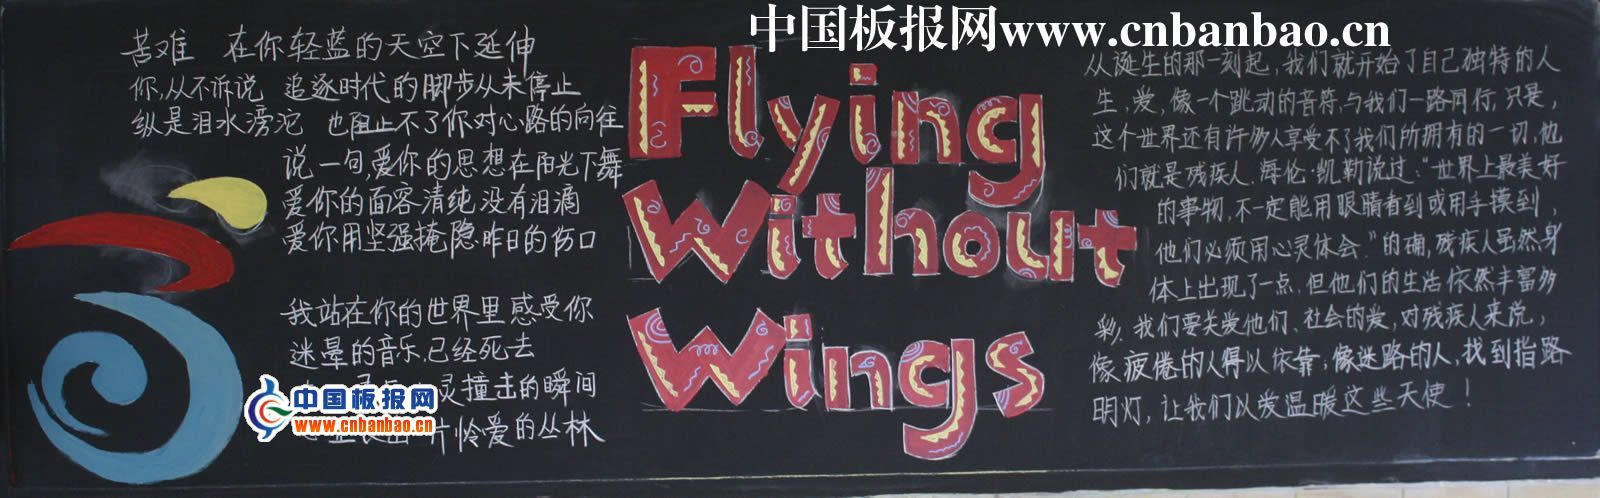 漂亮的黑板报：Flying without wings